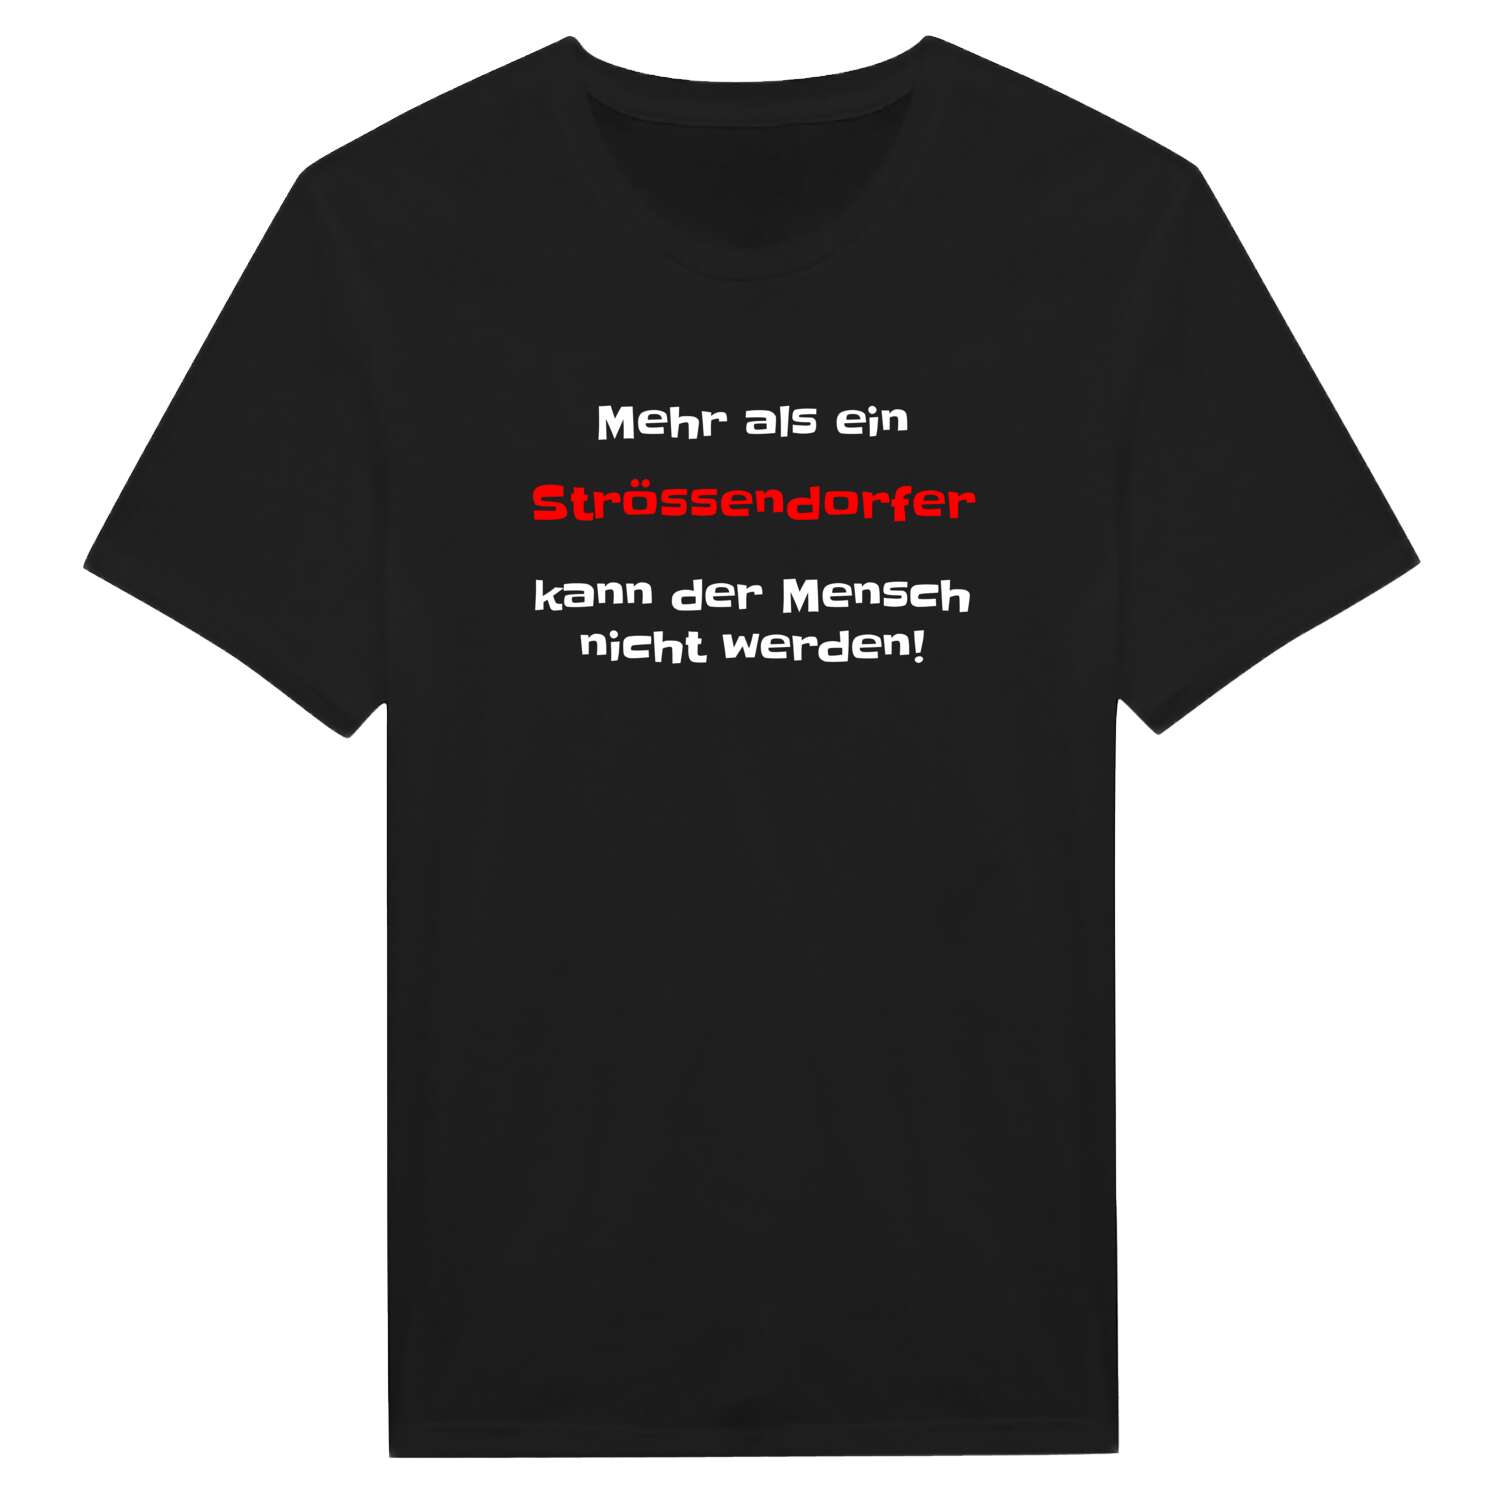 Strössendorf T-Shirt »Mehr als ein«